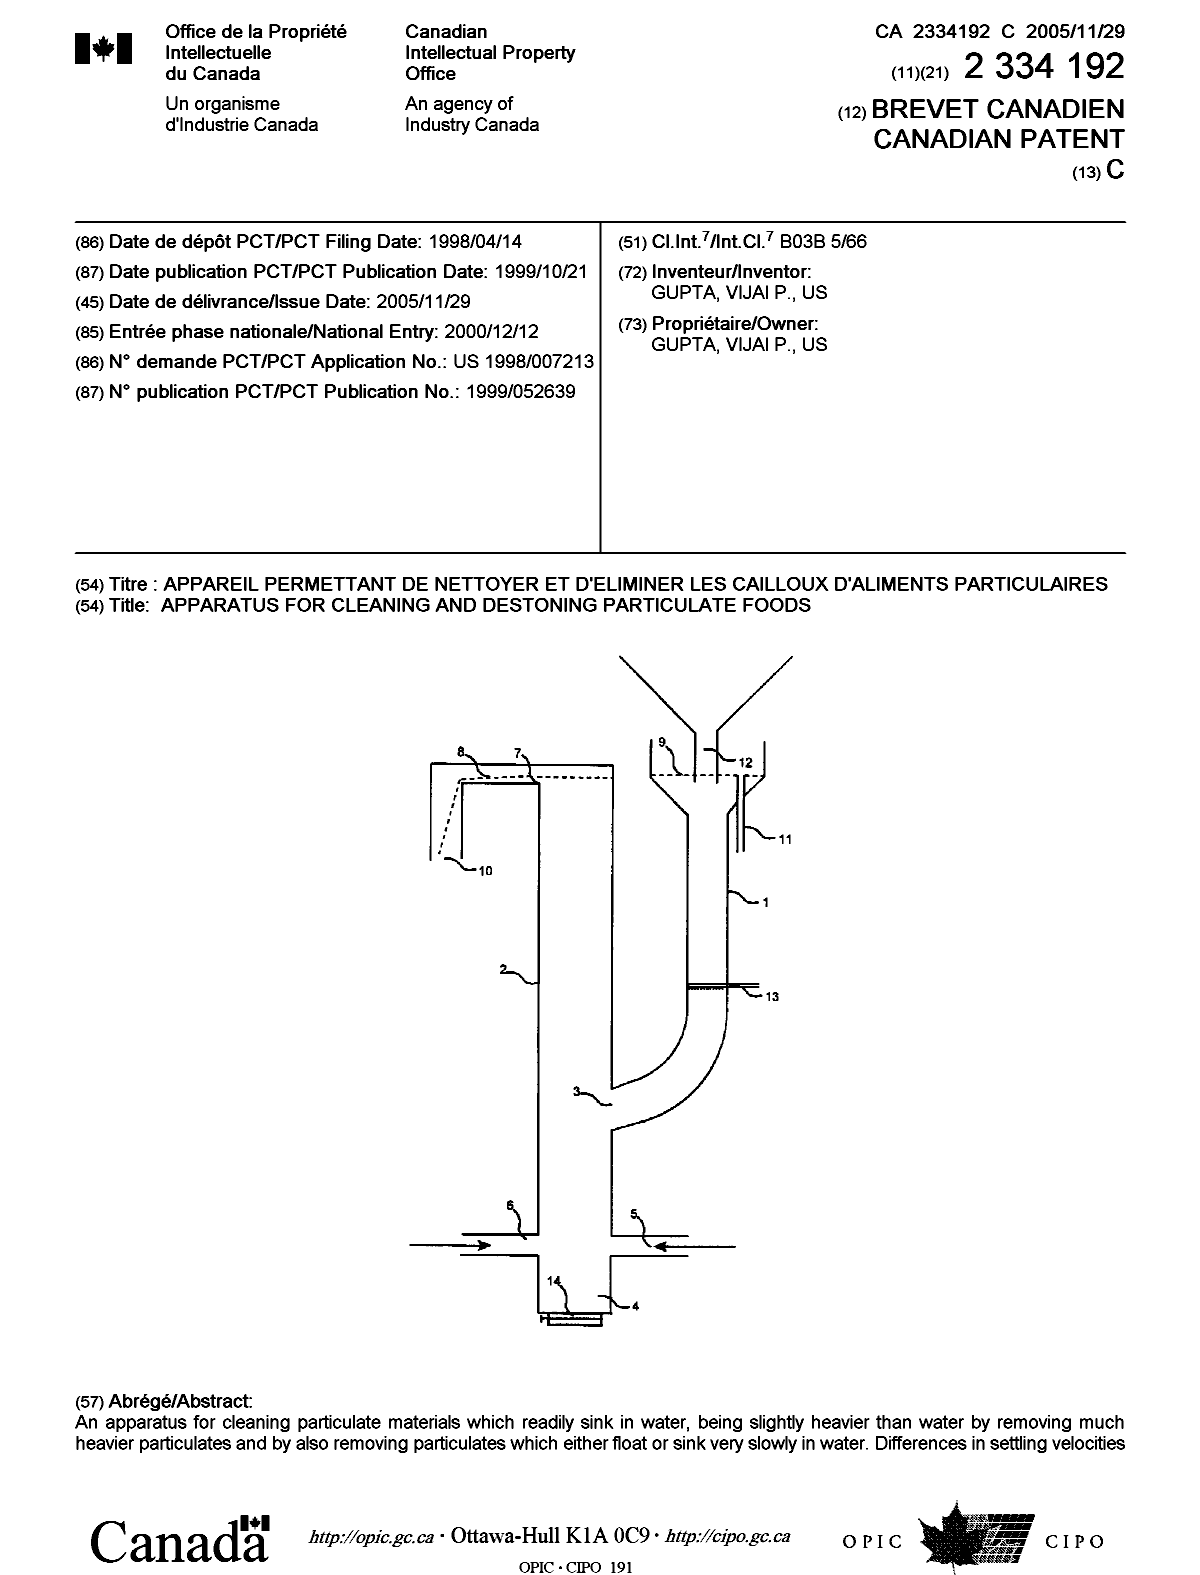 Document de brevet canadien 2334192. Page couverture 20051104. Image 1 de 2